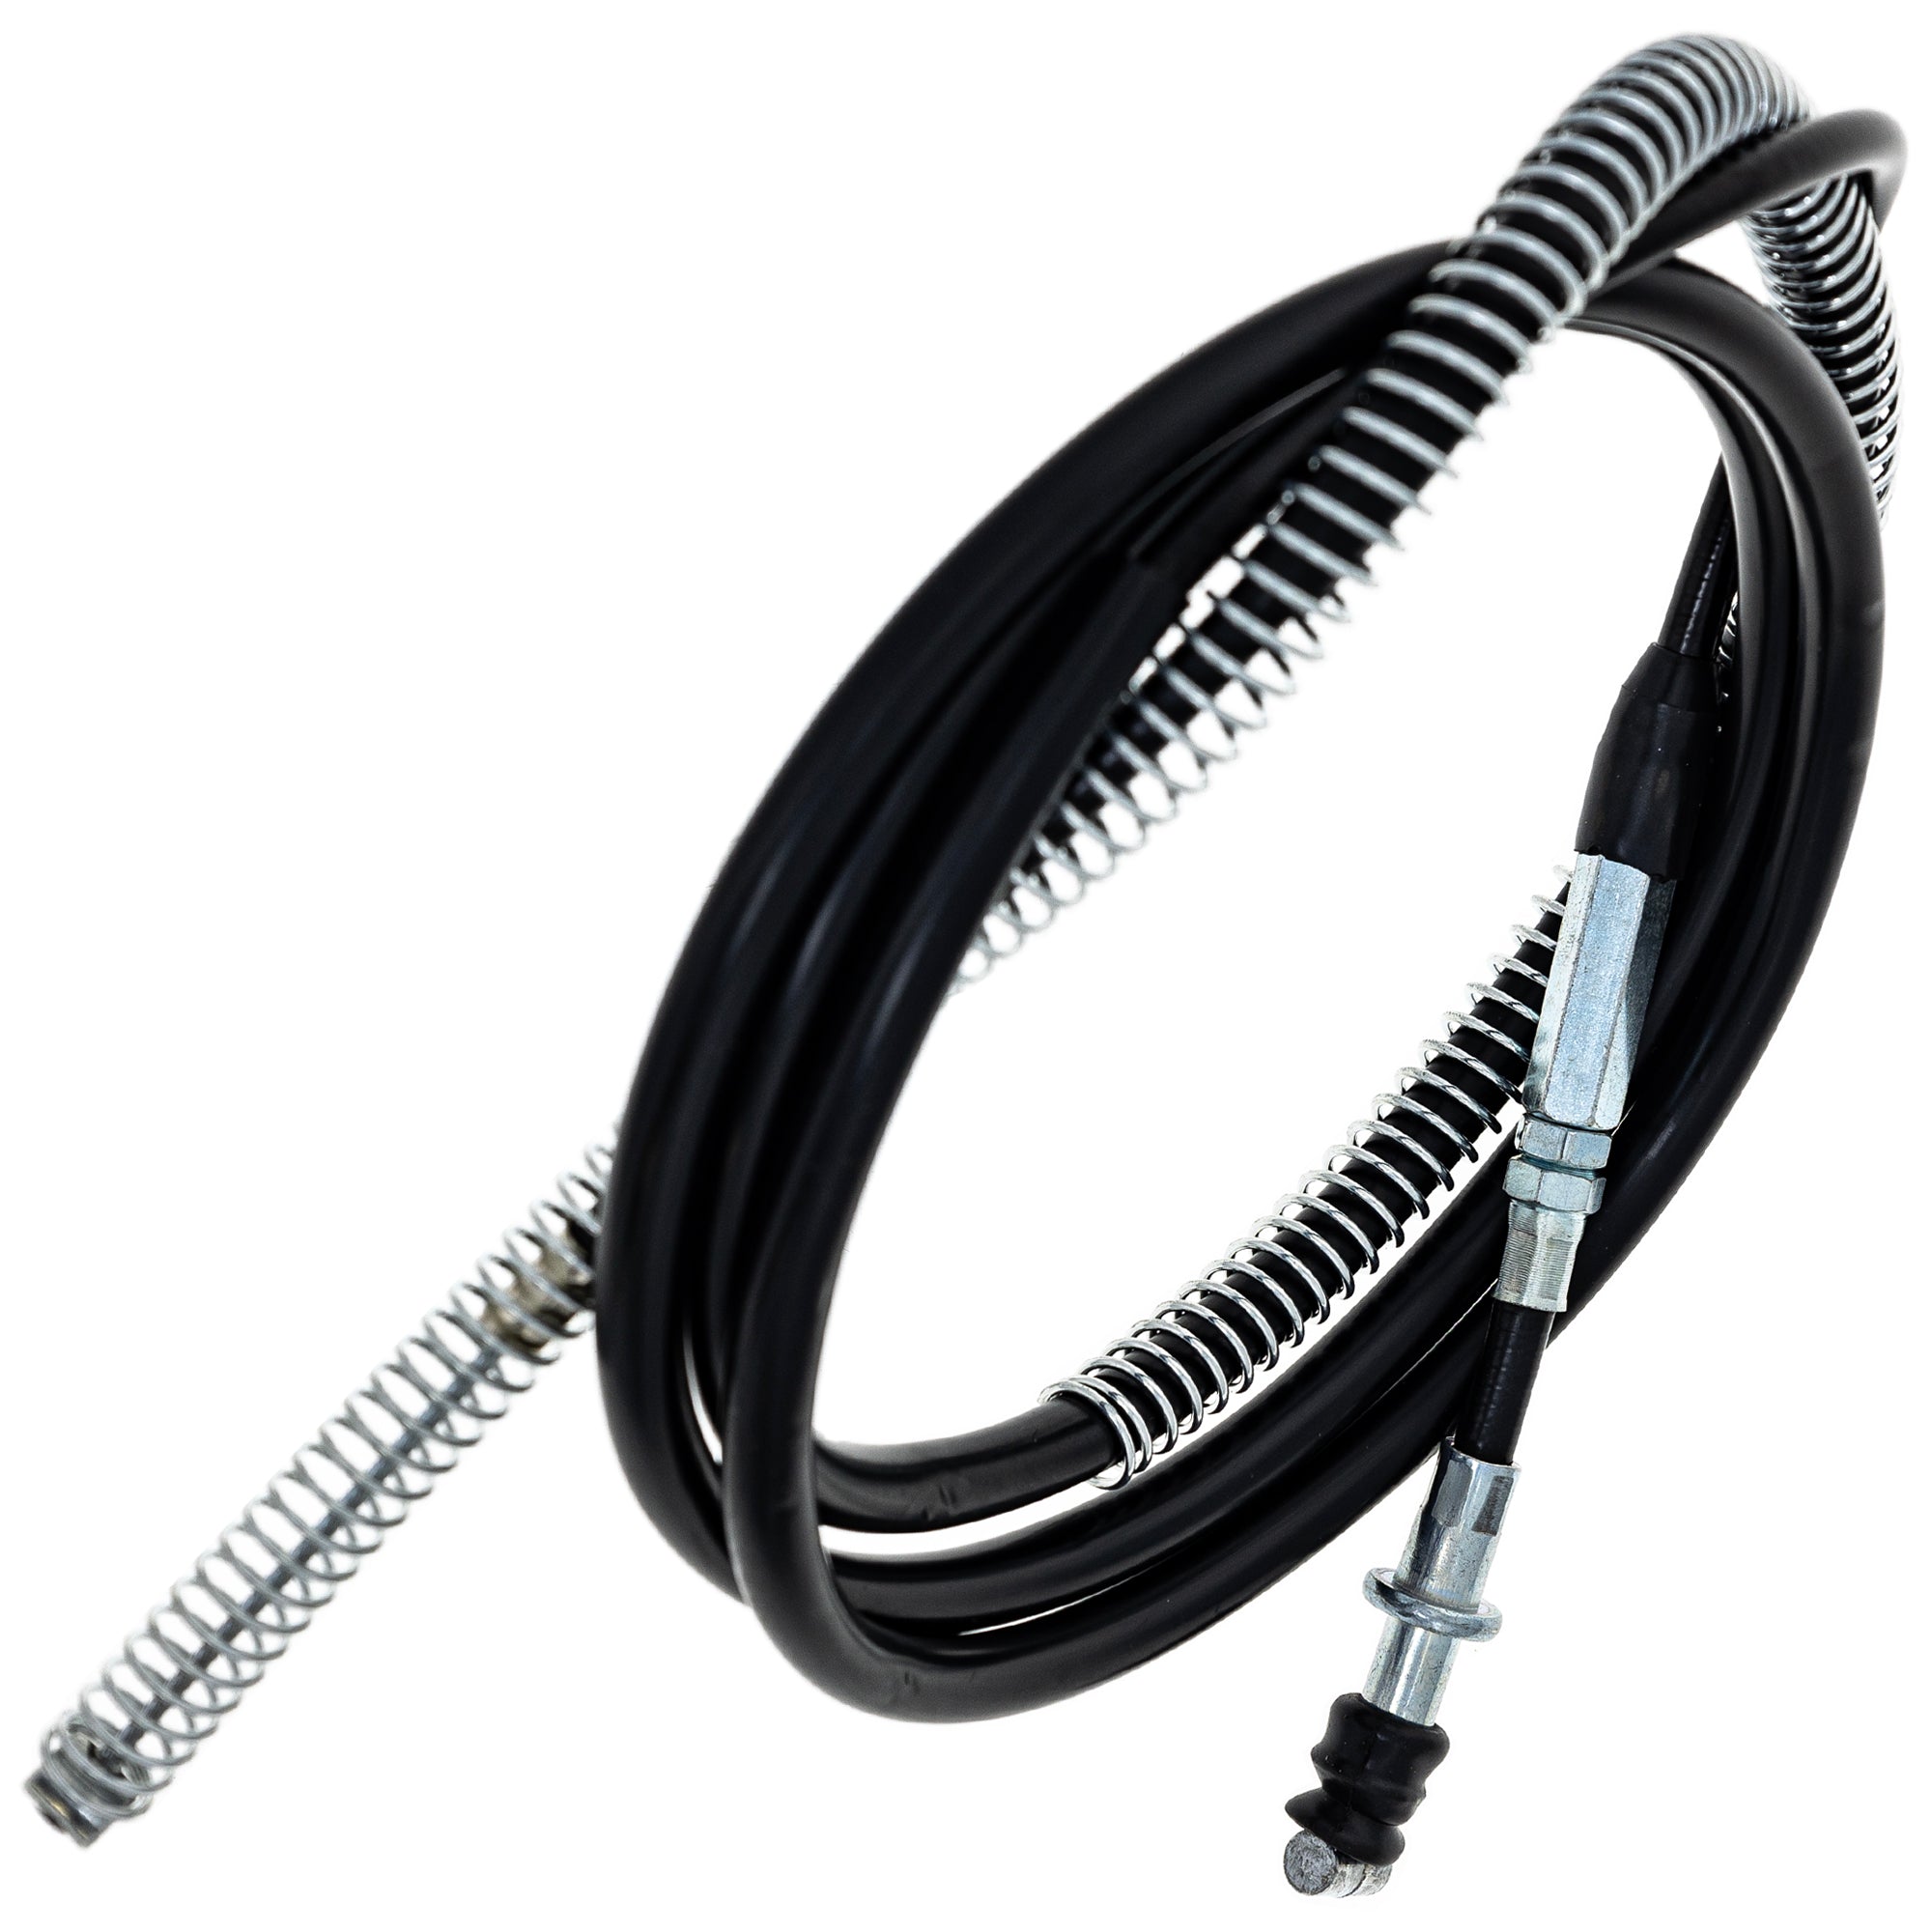 Hand Brake Cable for Yamaha Raptor 700 700R YFM700R 1S3-26341-00-00